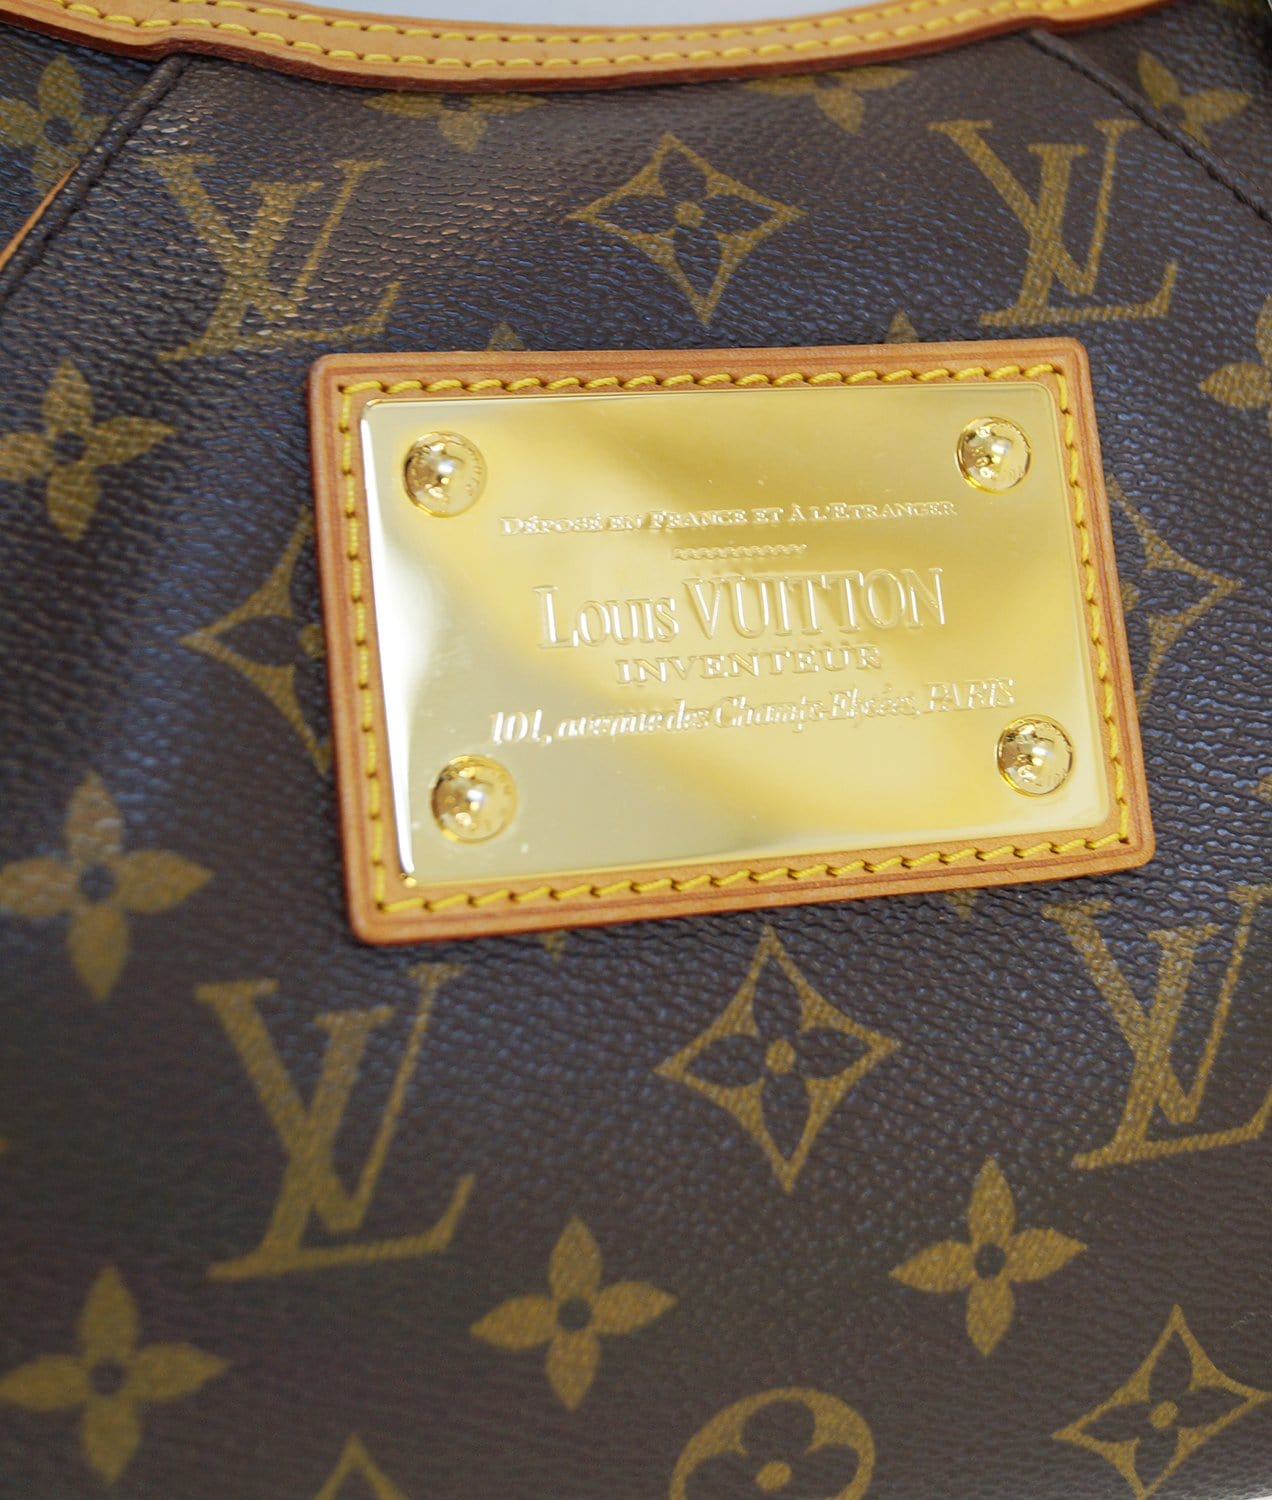 Louis Vuitton 2010 pre-owned Thames PM shoulder bag - ShopStyle